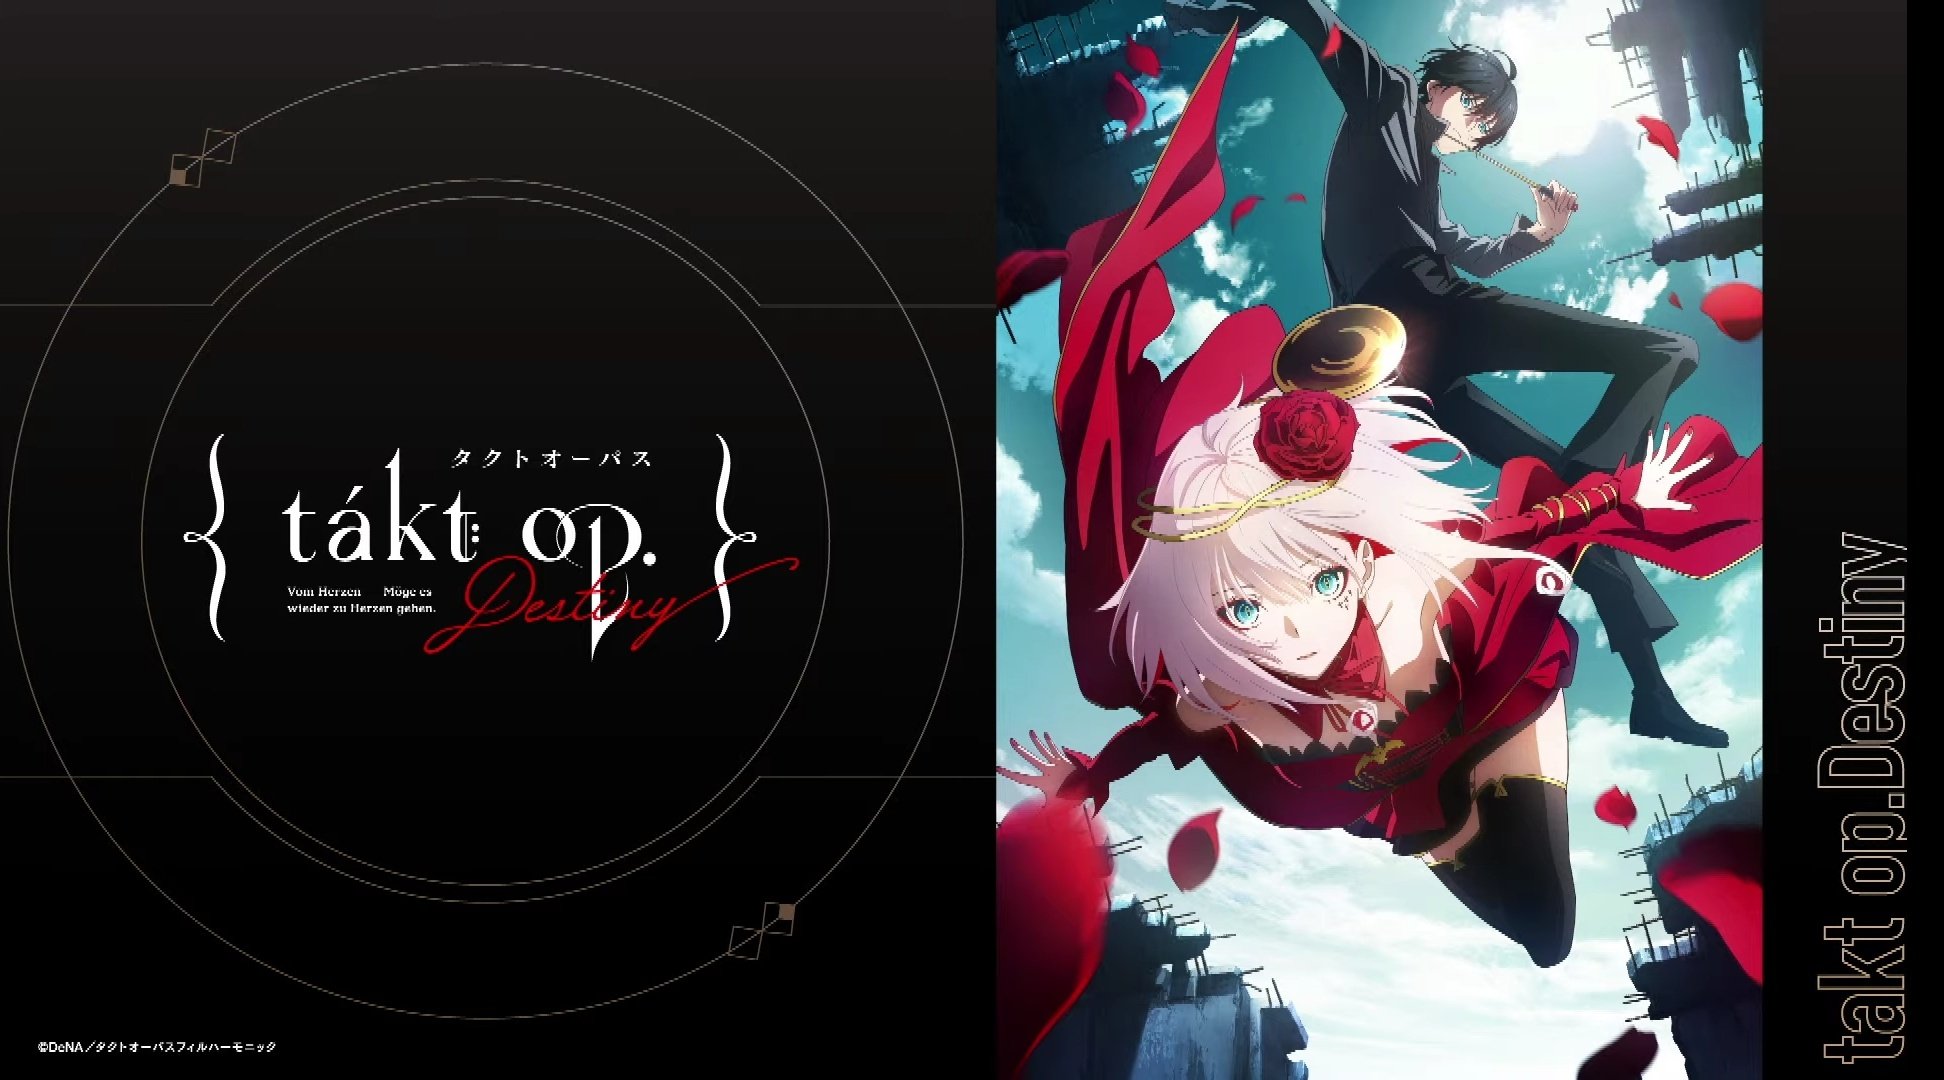 Takt Op.Destiny – 2° trailer do anime original dos estúdios MAPPA